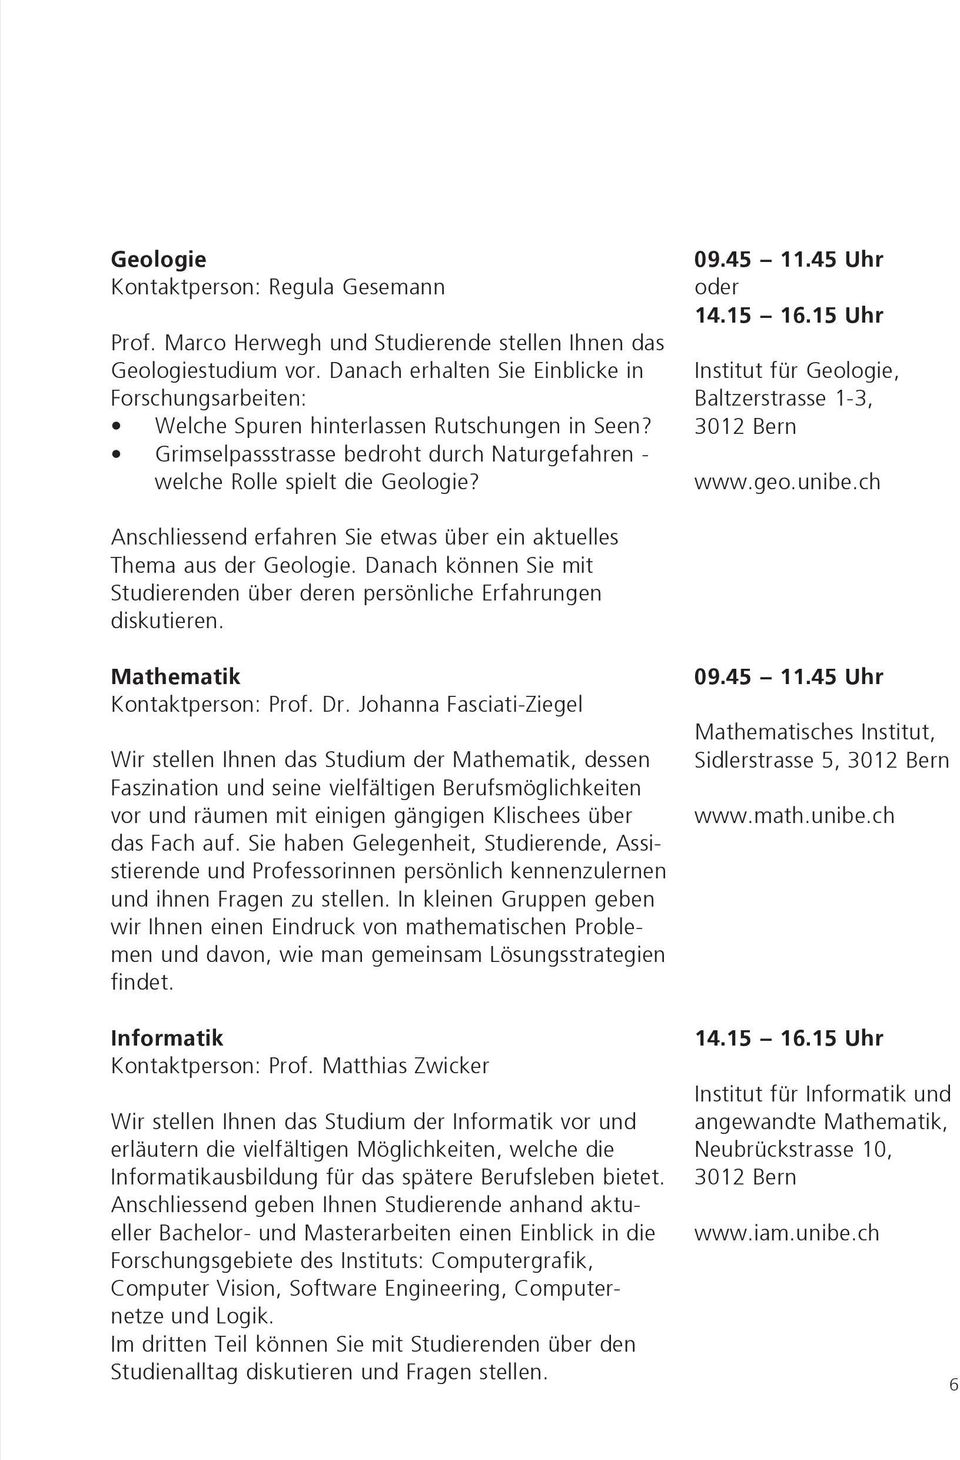 45 Uhr oder 14.15 16.15 Uhr Institut für Geologie, Baltzerstrasse 1-3, 3012 Bern www.geo.unibe.ch Anschliessend erfahren Sie etwas über ein aktuelles Thema aus der Geologie.